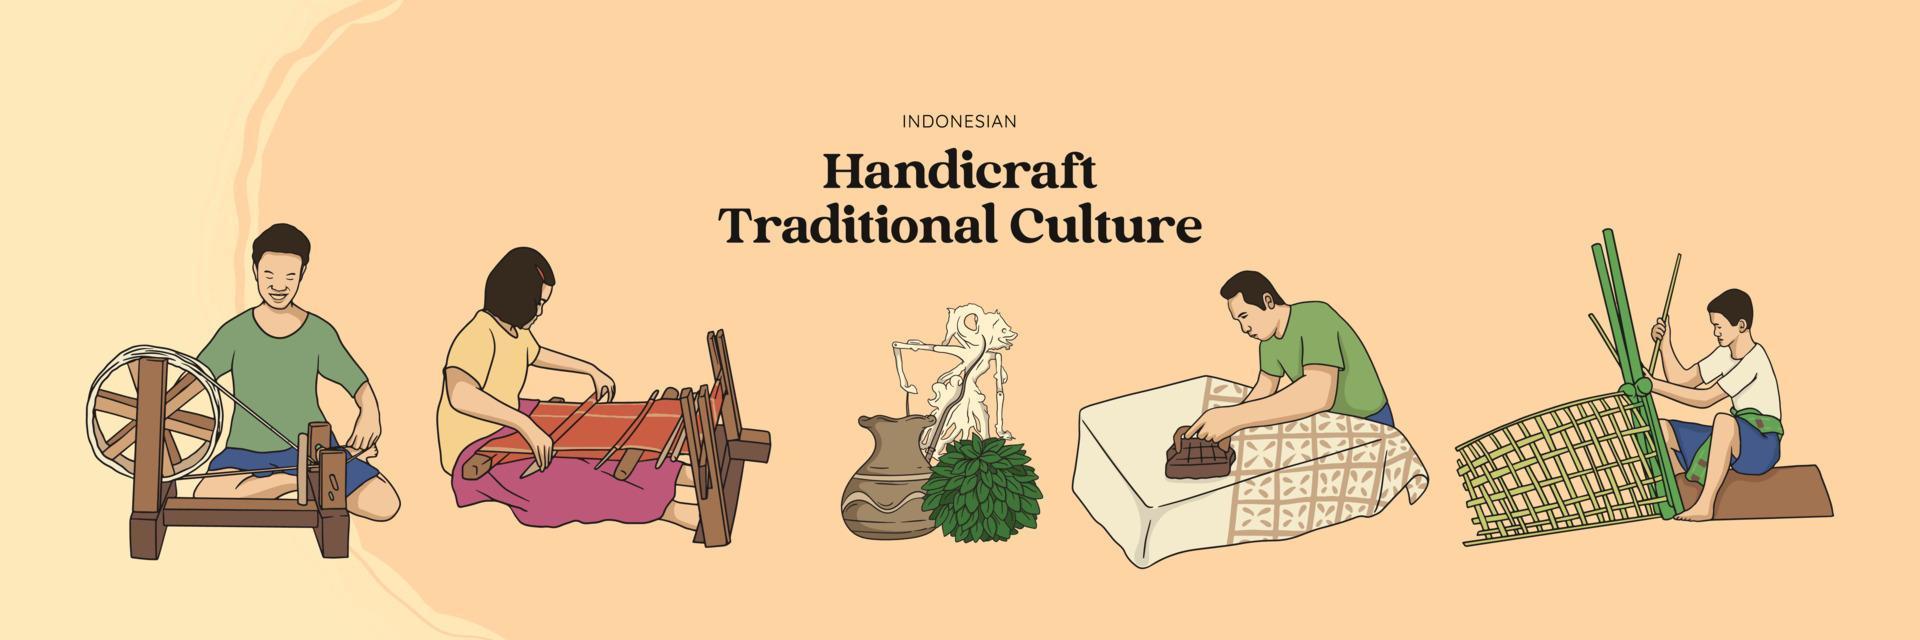 isolierte handgezeichnete traditionelle kultur des handwerks. Weber, Bambus- und Batikhandwerker vektor